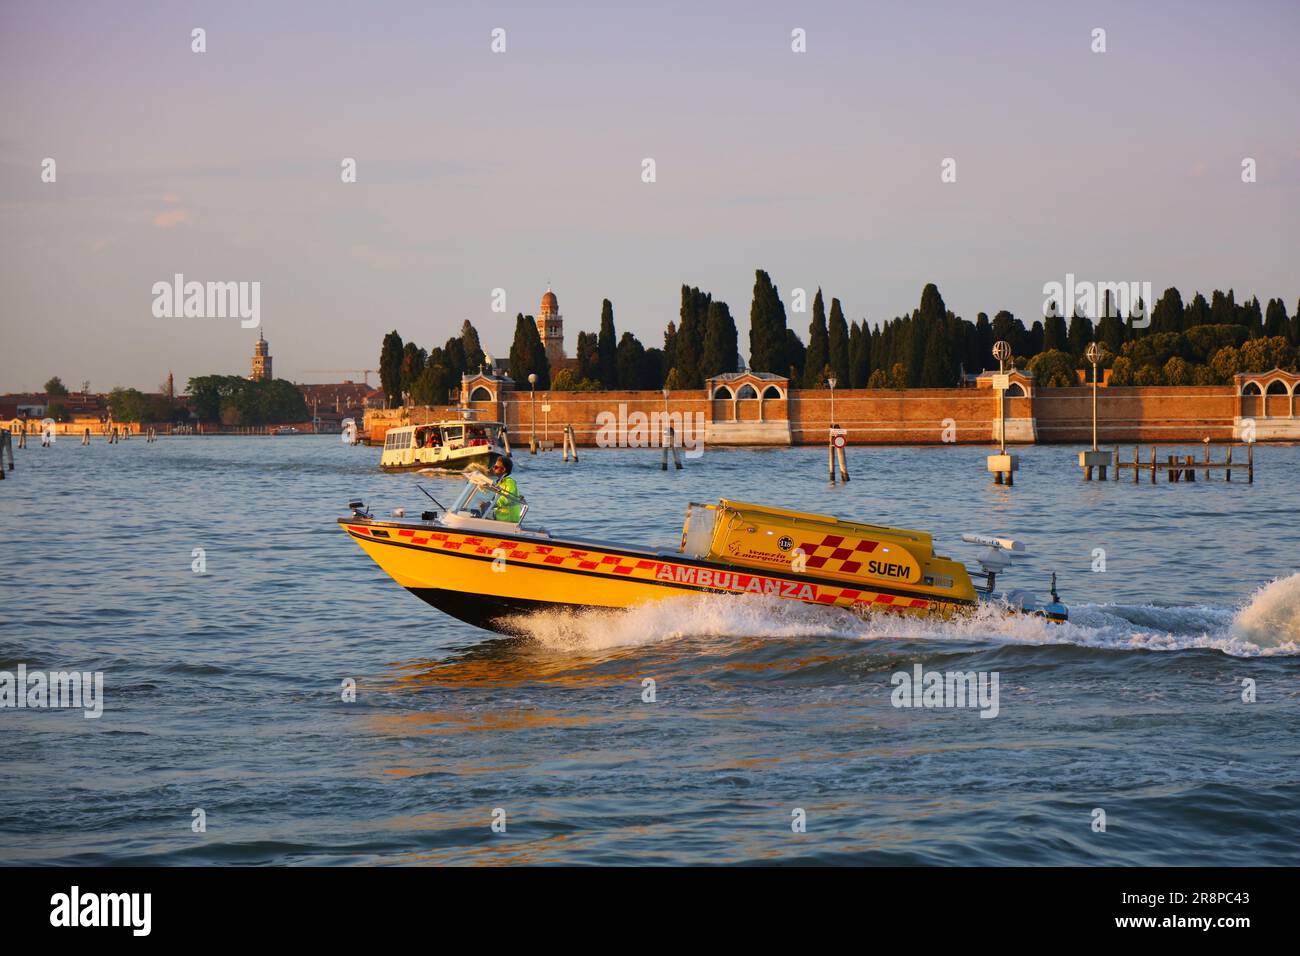 VENEZIA, ITALIA - 21 MAGGIO 2023: Ambulanza in barca che va veloce a Venezia, Italia. Venezia è un sito patrimonio dell'umanità dell'UNESCO. Foto Stock